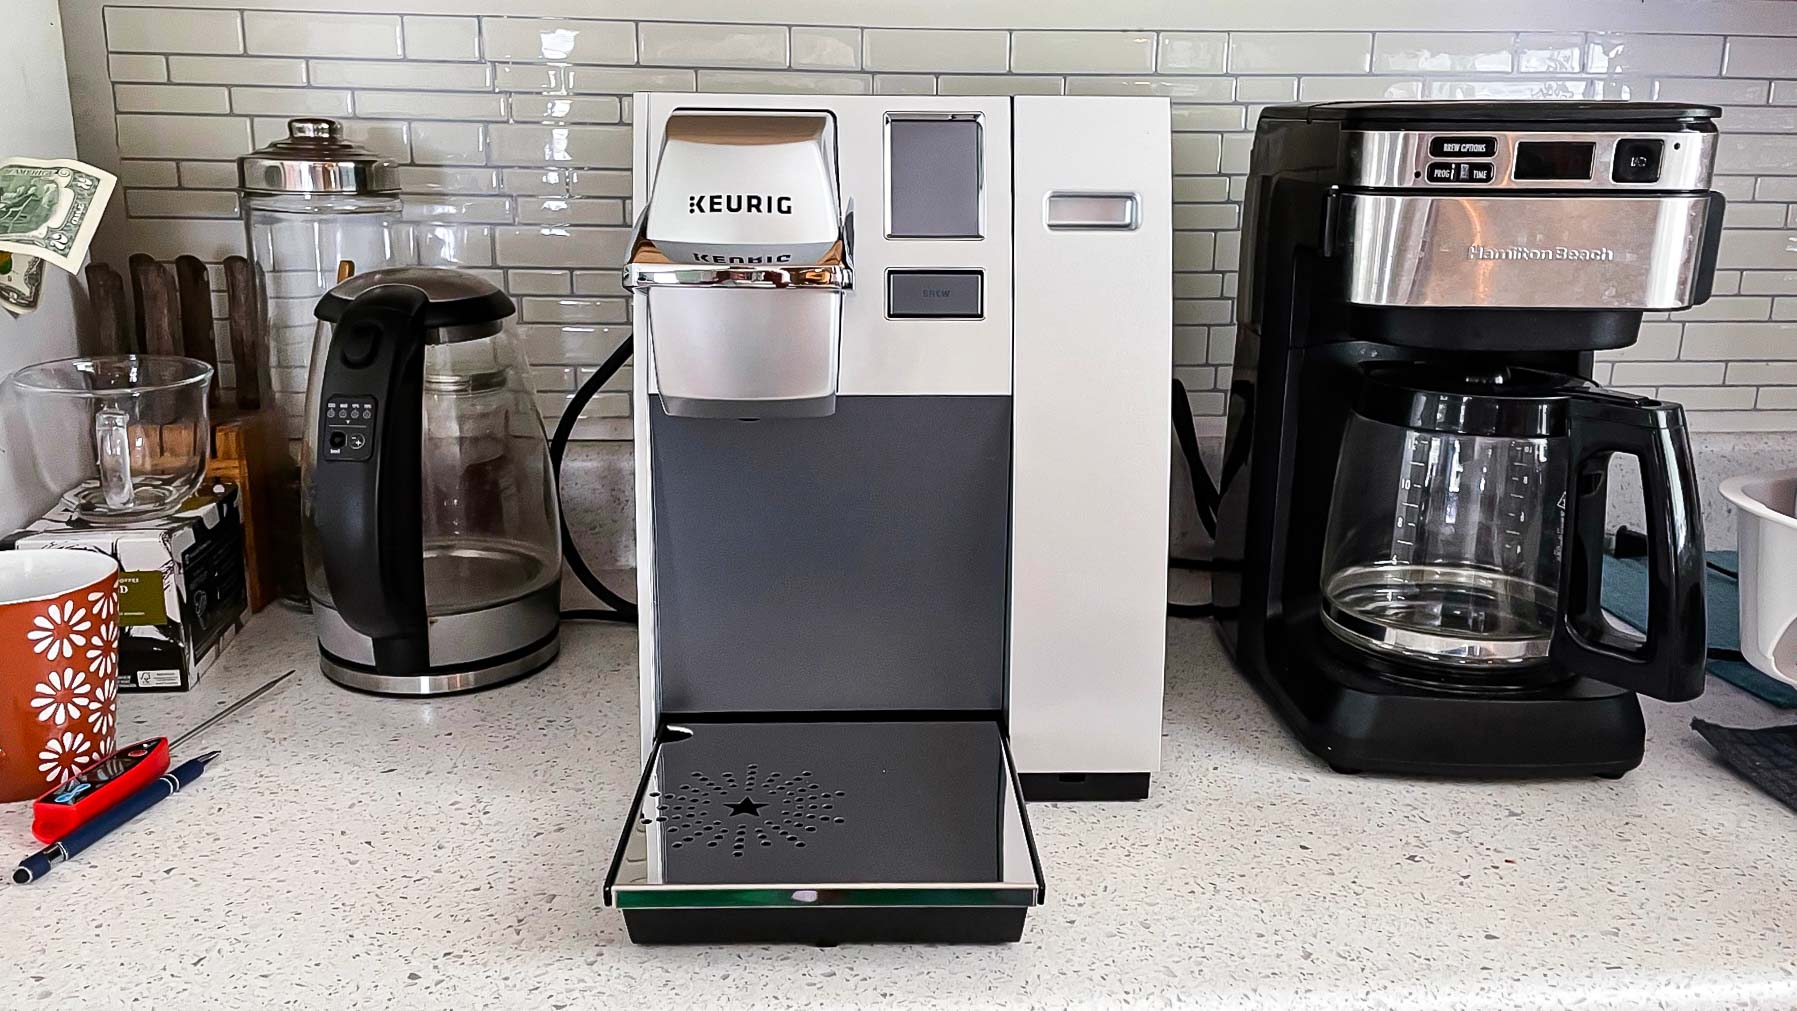 Keurig K2500 Plumbed Coffee Maker with Adapter